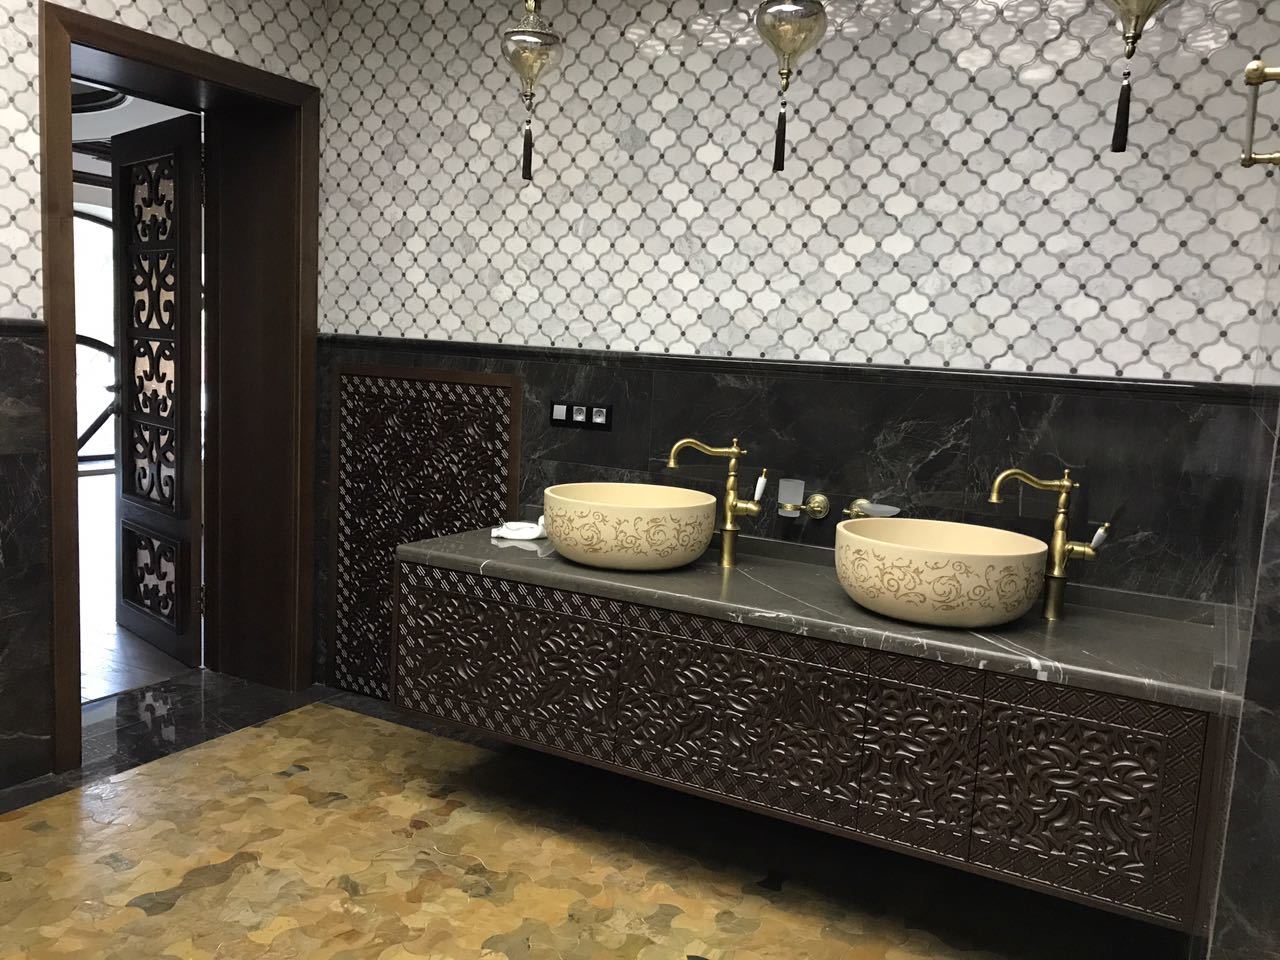 <span style="font-weight: bold;">Хамам, душевые, ванные комнаты из натурального камня</span><br>